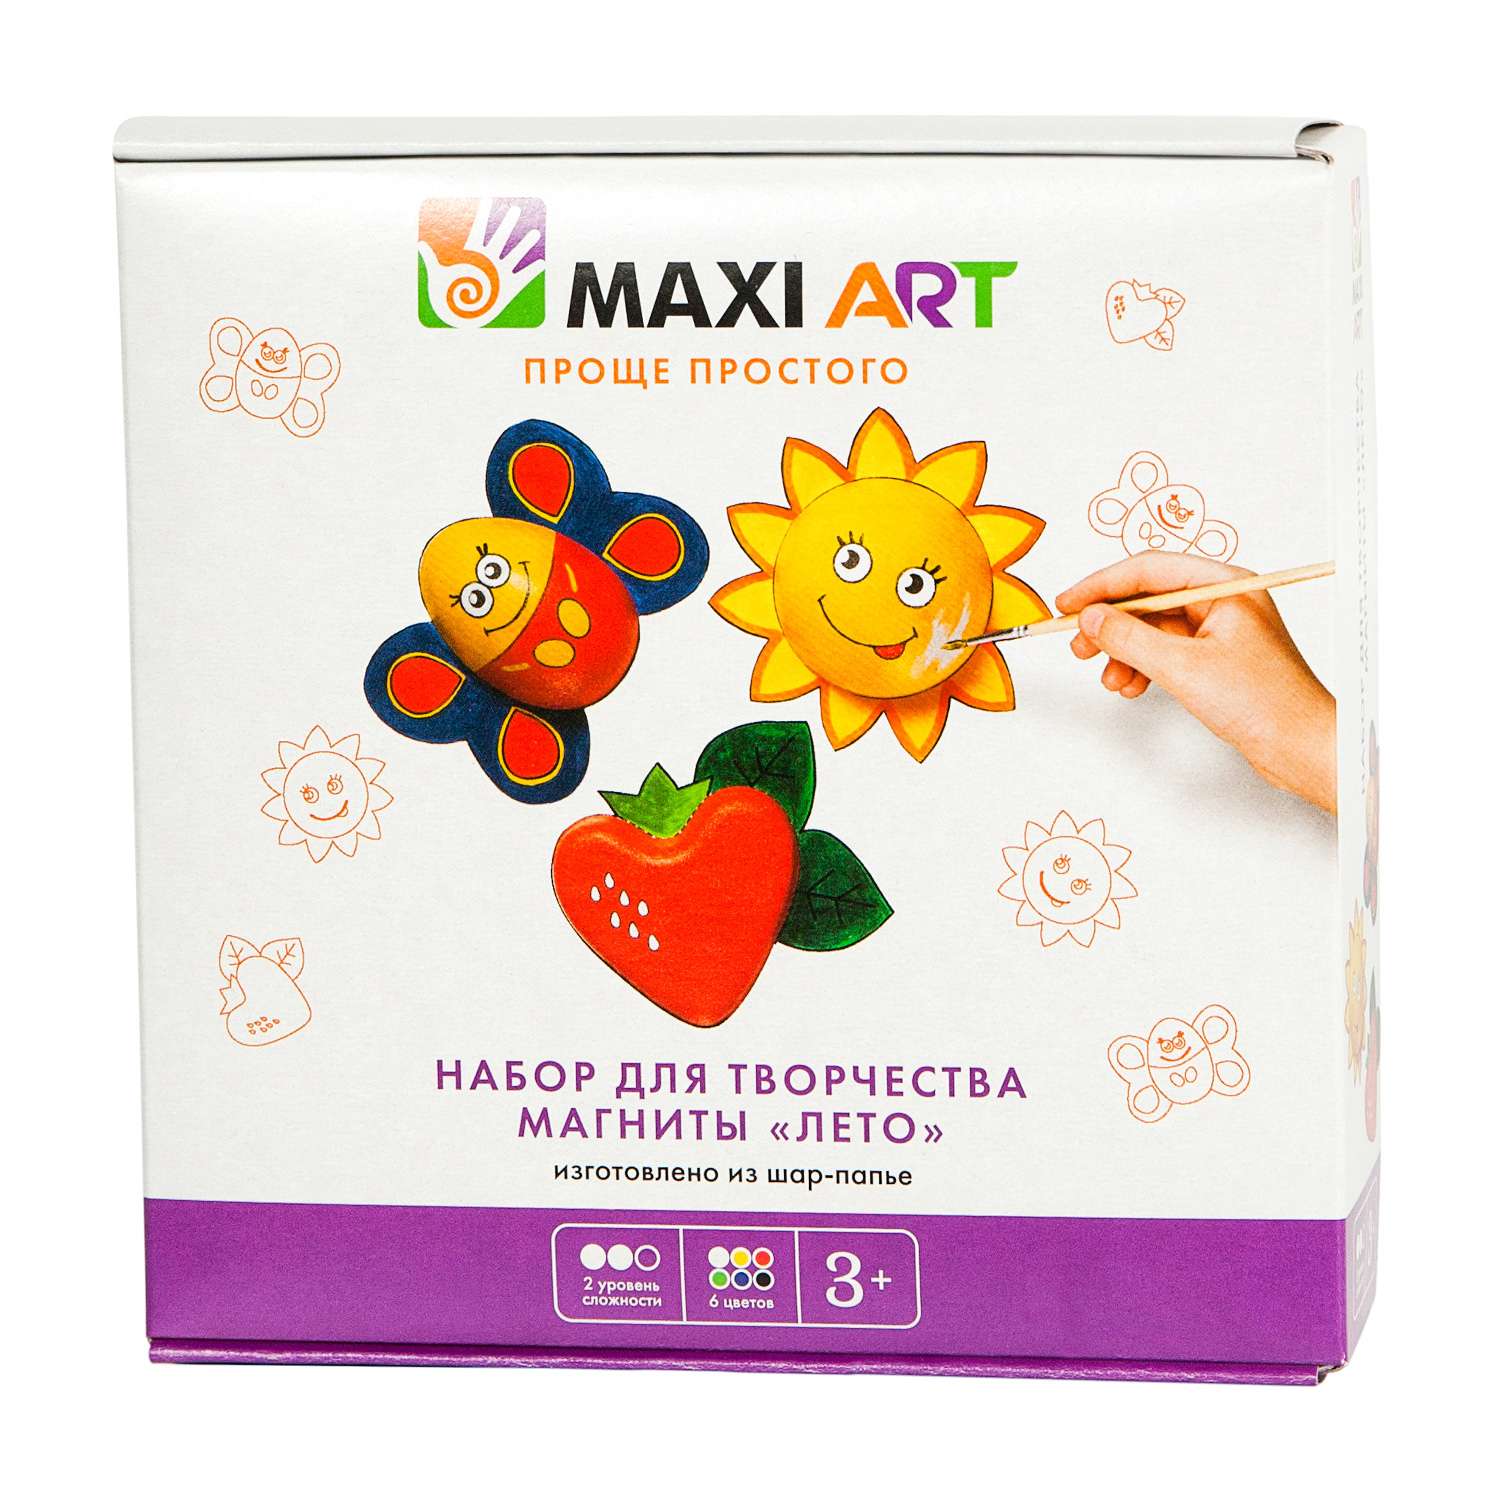 Магниты Maxi Art Лето - фото 1